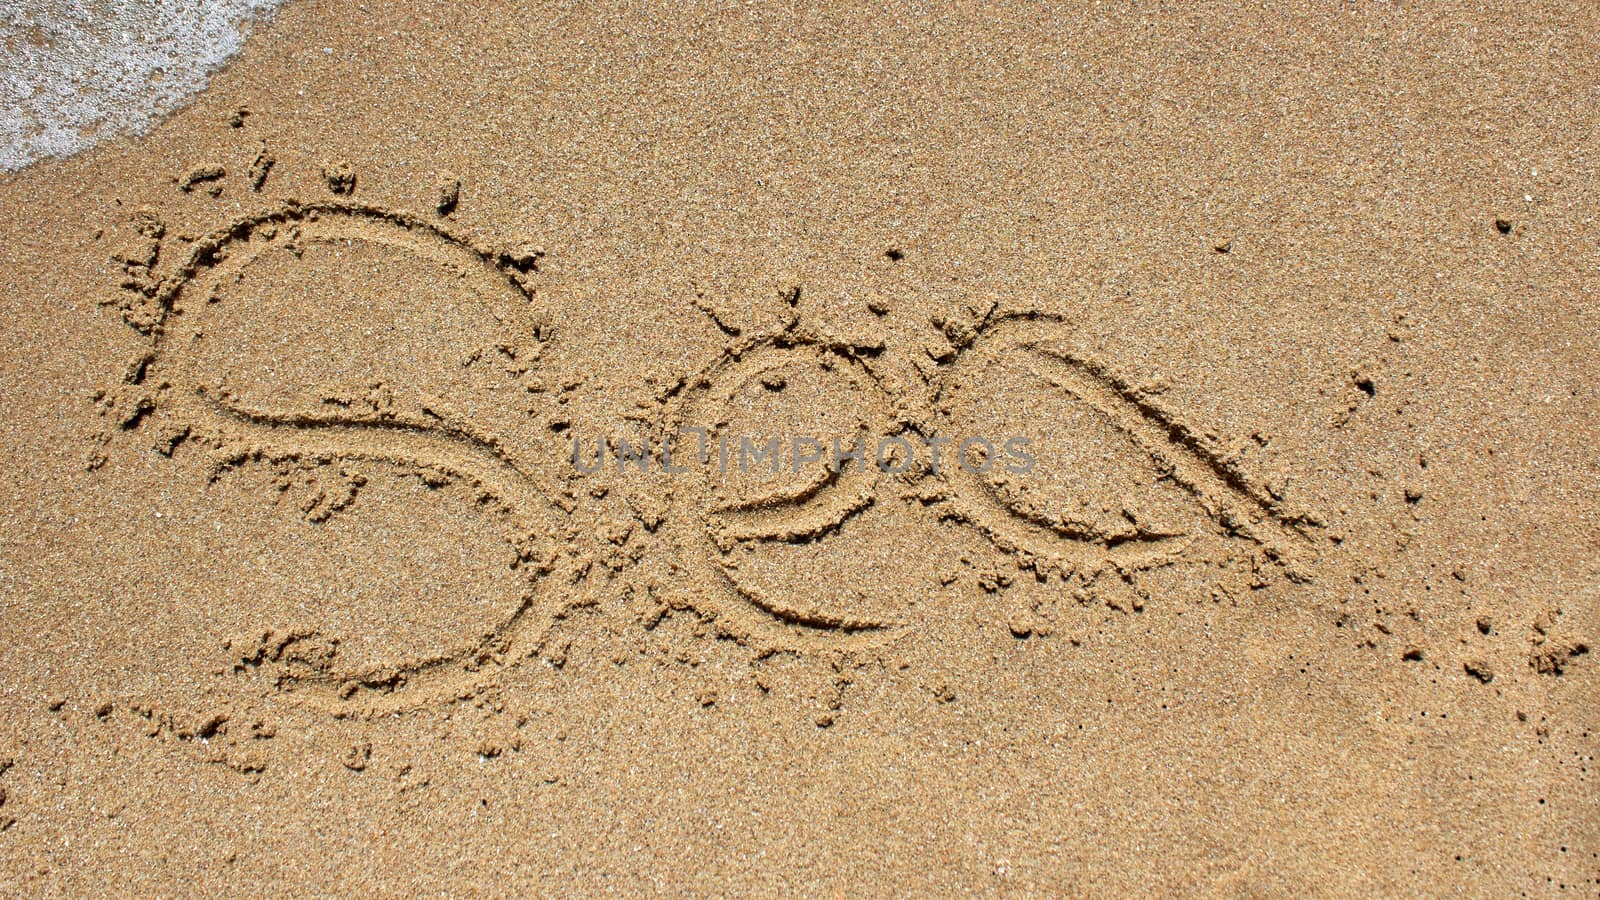 Sea word written on the beach sand.